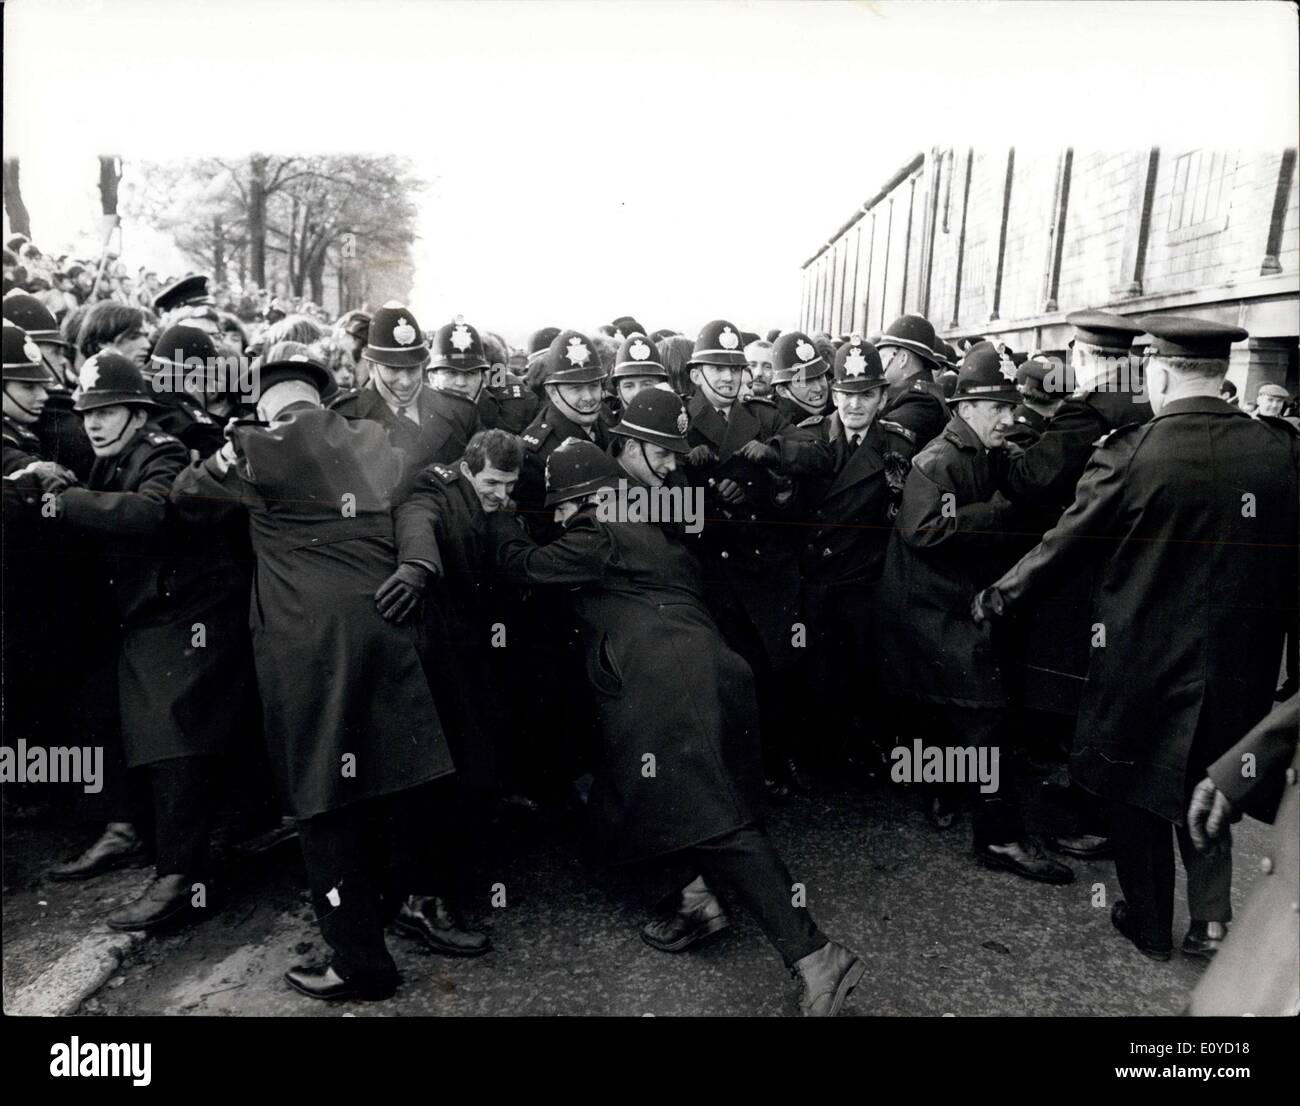 16. November 1969 - A Polizist wird erstochen in Rugby Aufruhr bei Swansea gestern: ein Polizei-Sergeant war im Krankenhaus gestern Abend nach dem Kampf zwischen Anti-Apartheid-Demonstranten und Polizei erstochen wird. Neun weitere Offiziere wurden auch ins Krankenhaus während der zwei - und - eine halbe Stunde Kampf außerhalb der St. Helens Rugby ground, Swansea, wo schlagen die Springboks Swansea um 12 Punkte auf Null gestern. Rund 30 Demonstranten wurden festgenommen. Bild zeigt: The Police Haken, wie sie kämpfen, um die Demonstranten aus Bodennähe Rugby gestern immer zurückhalten. Stockfoto